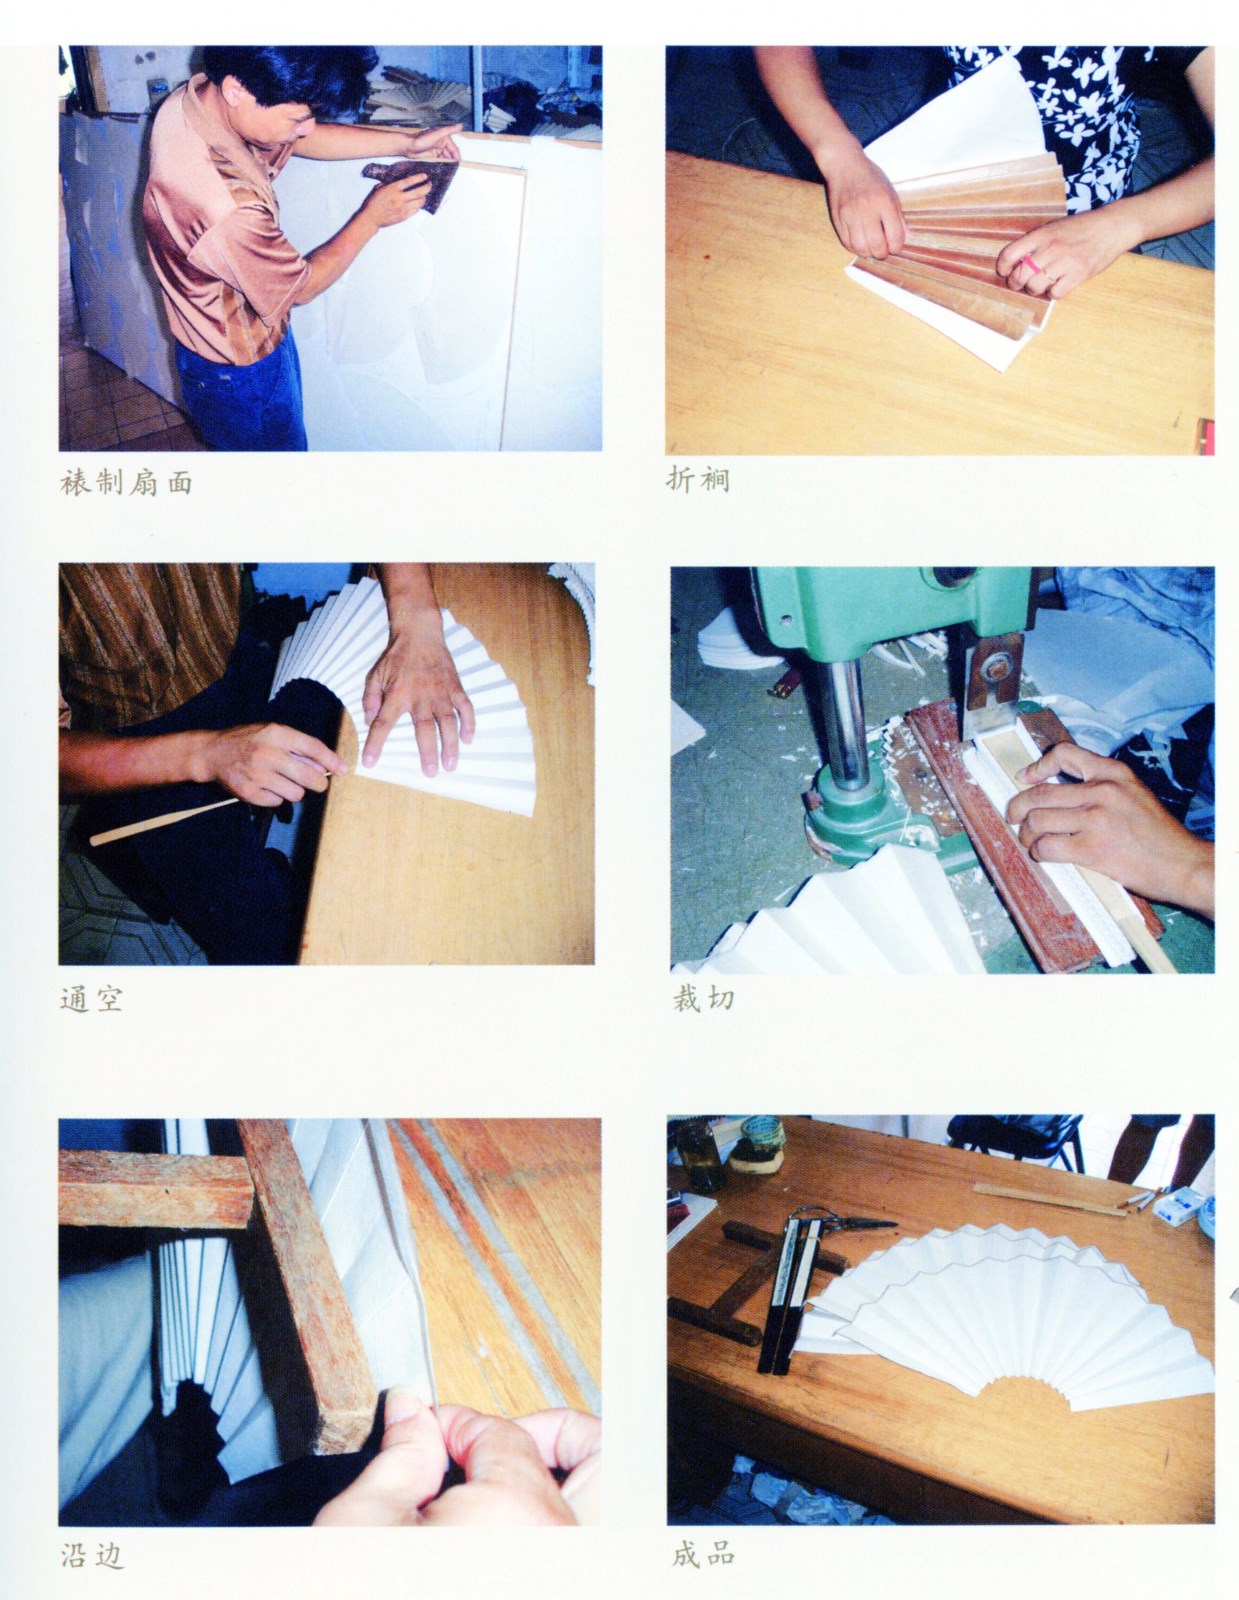 手工葵扇的制作过程图片